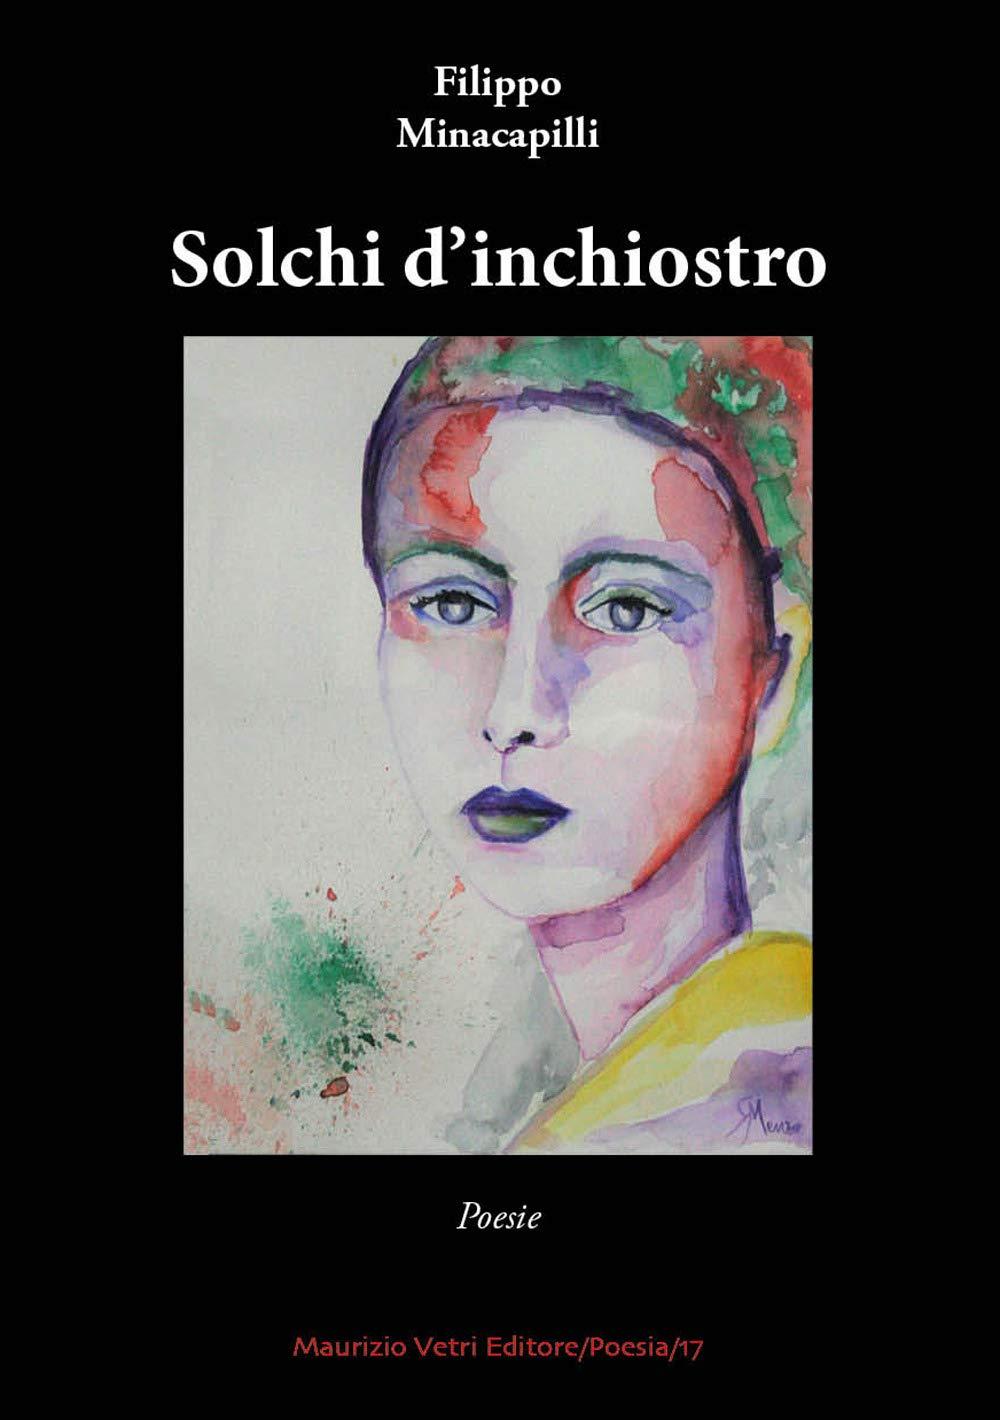 Libro "Solchi d'inchiostro" di Filippo Minacapilli